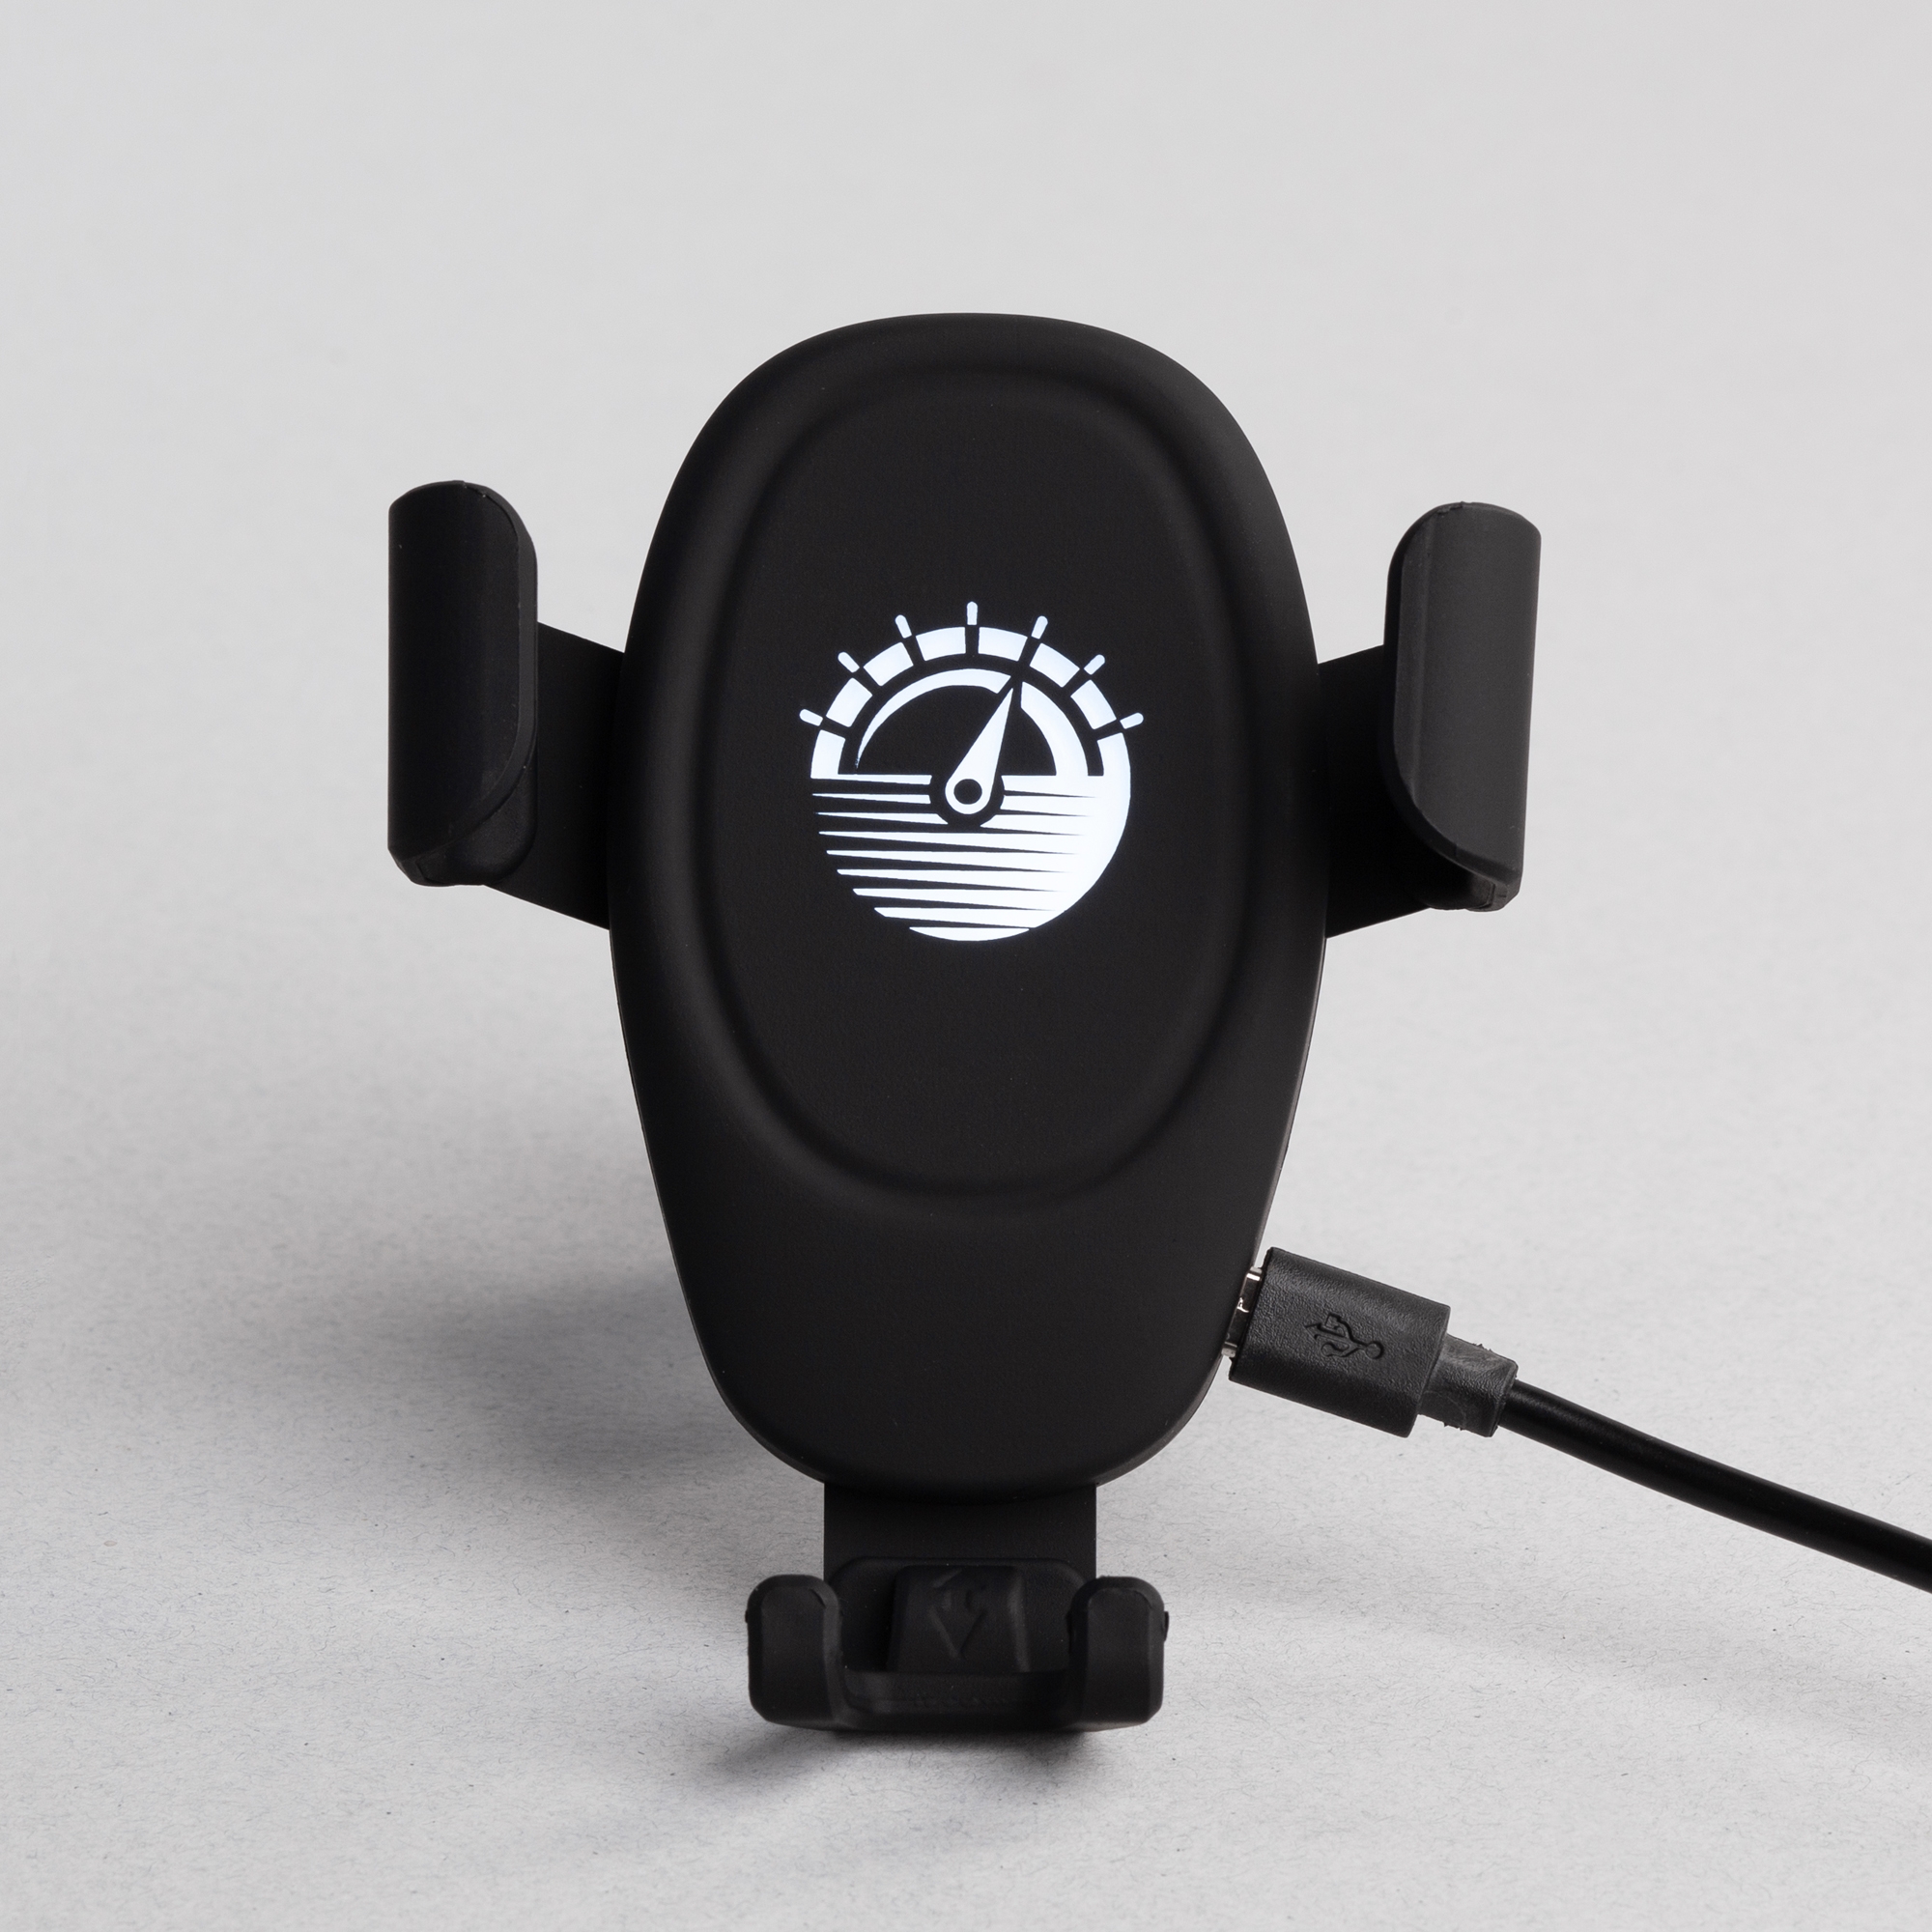 Автомобильное беспроводное (10W) зарядное устройство "Clamp SOFTTOUCH" с подсветкой логотипа, черный, абс-пластик/soft touch